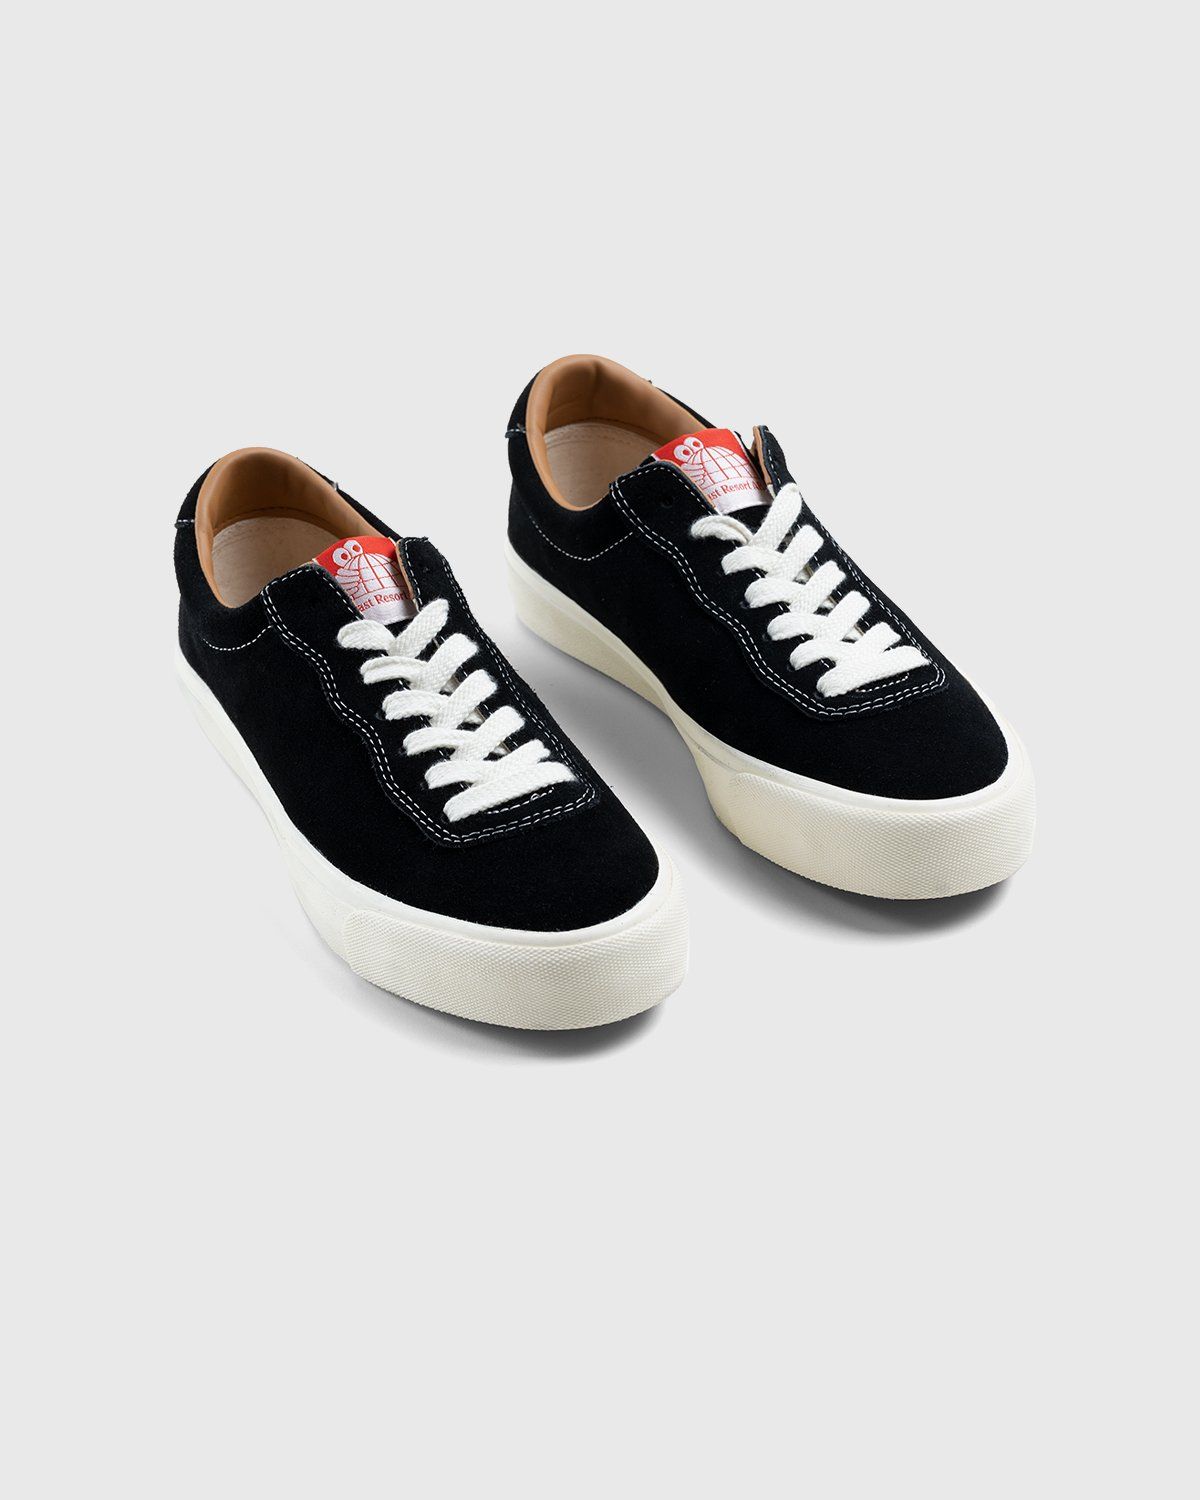 Last Resort AB – VM001 Suede Lo Black/White - Low Top Sneakers - Black - Image 3